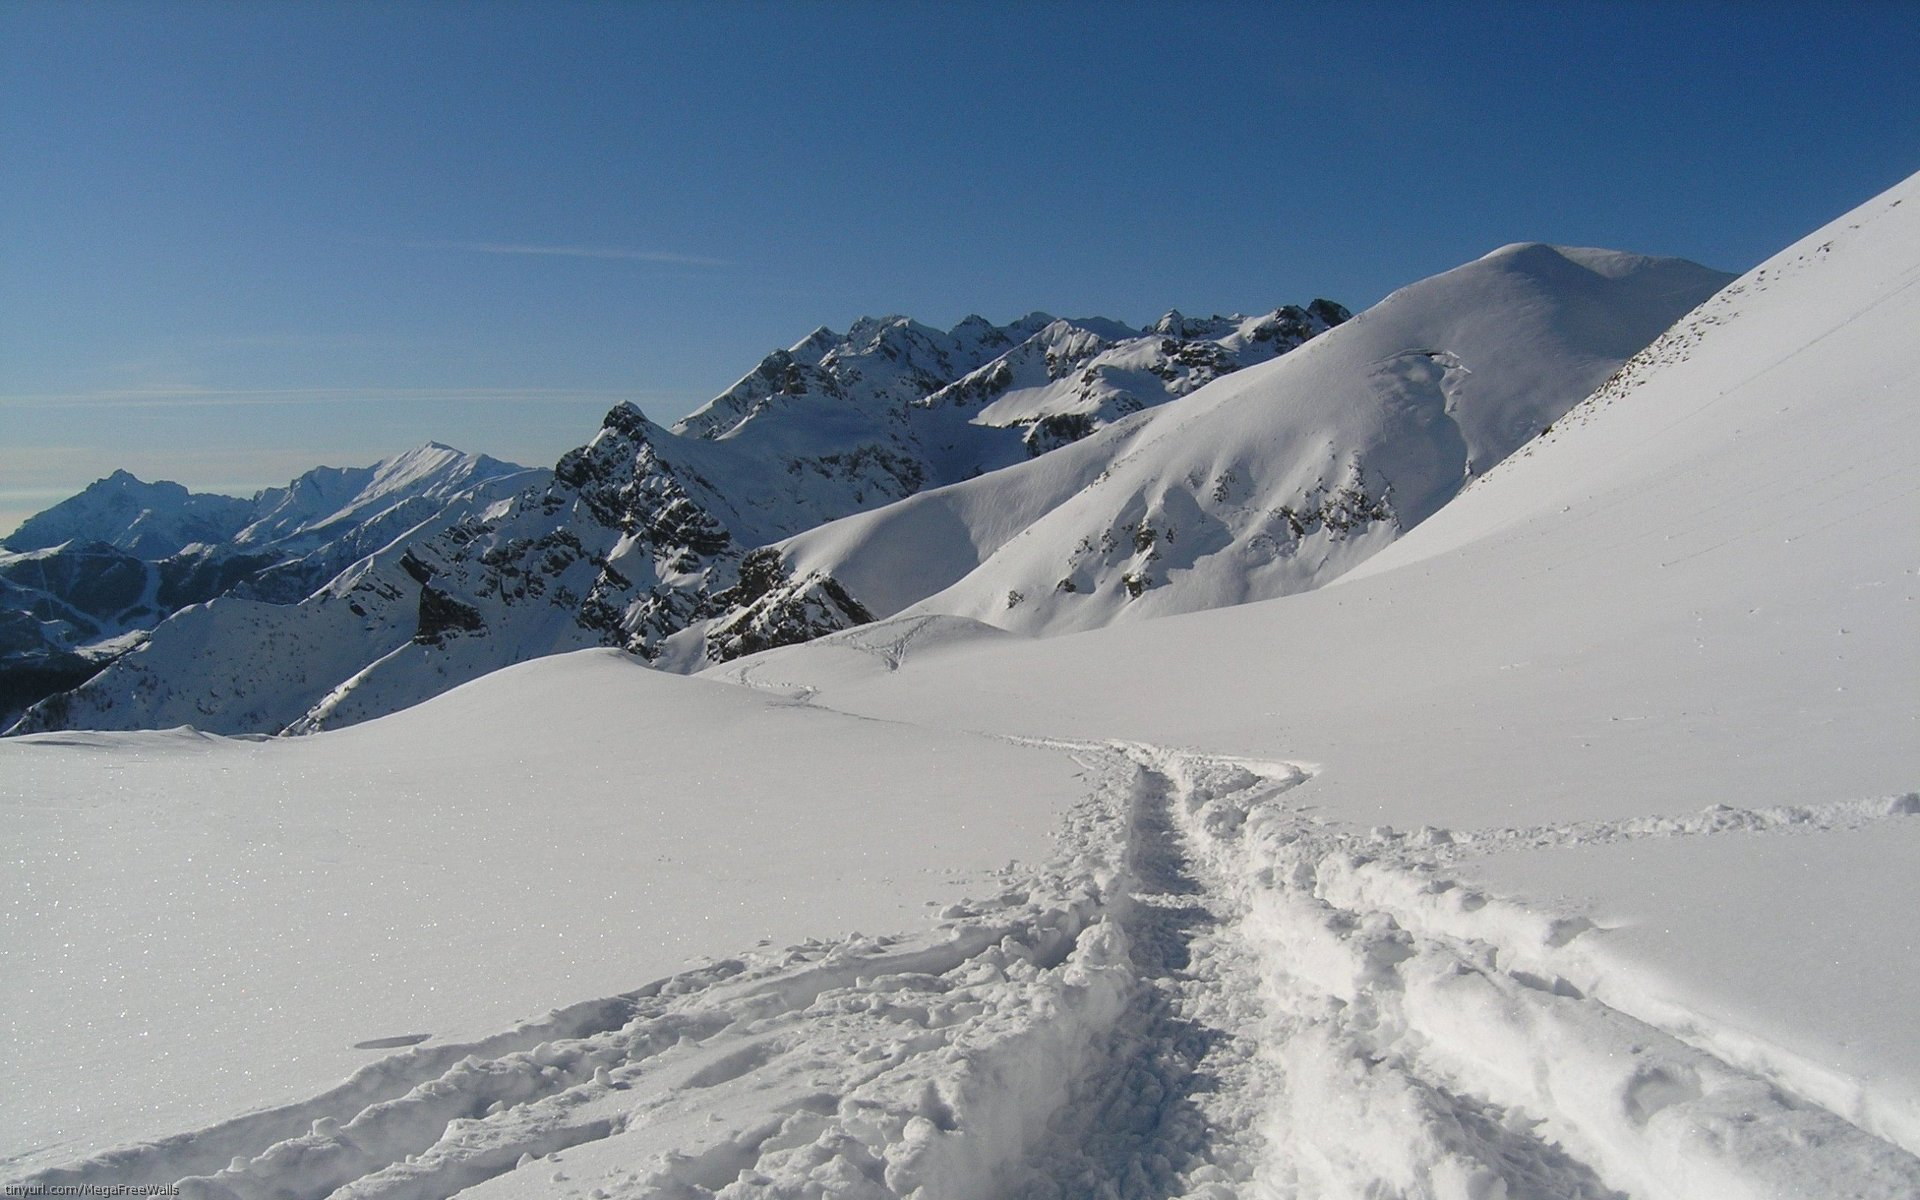 Скачать обои бесплатно Зима, Снег, Гора, Земля/природа картинка на рабочий стол ПК